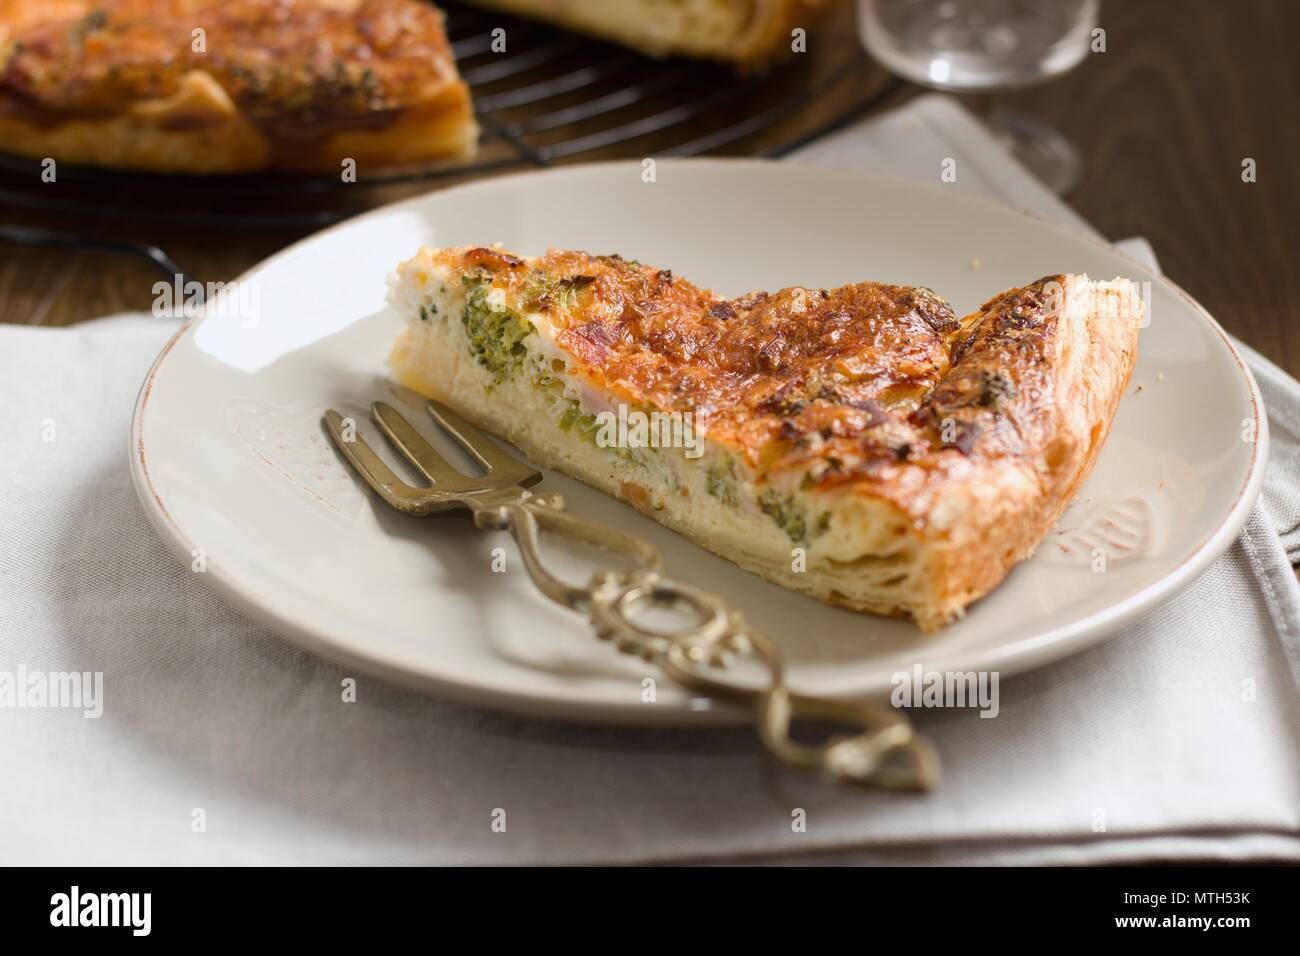 Fetta di torta di verdure o quiche, servita su una piastra Foto Stock